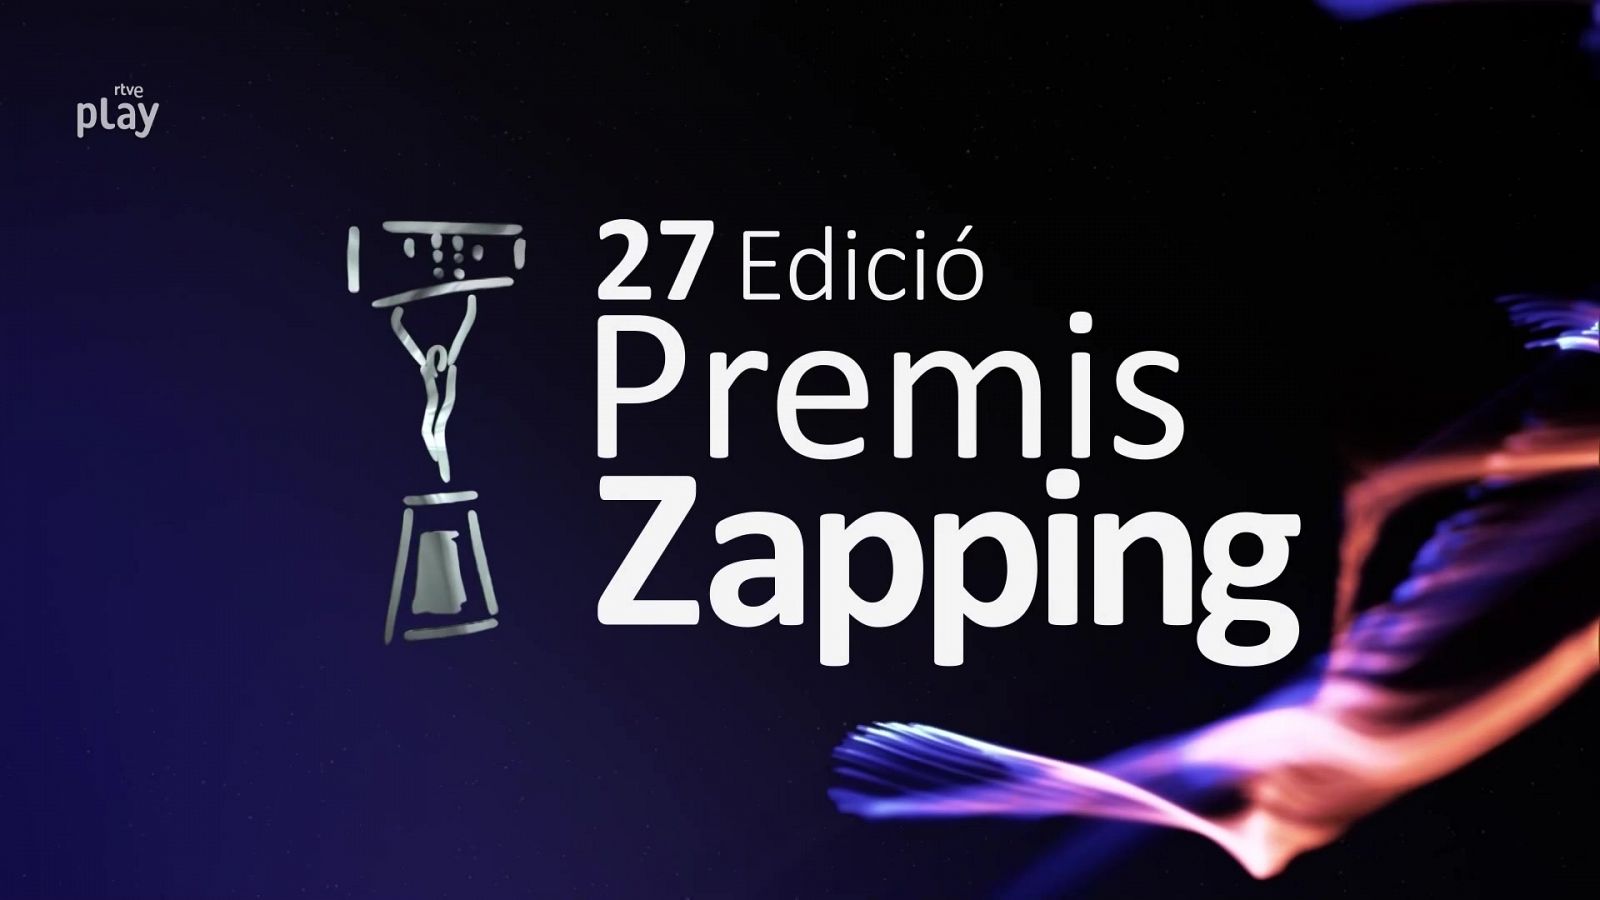 27º edició Premis Zapping 2022 - RTVE Catalunya